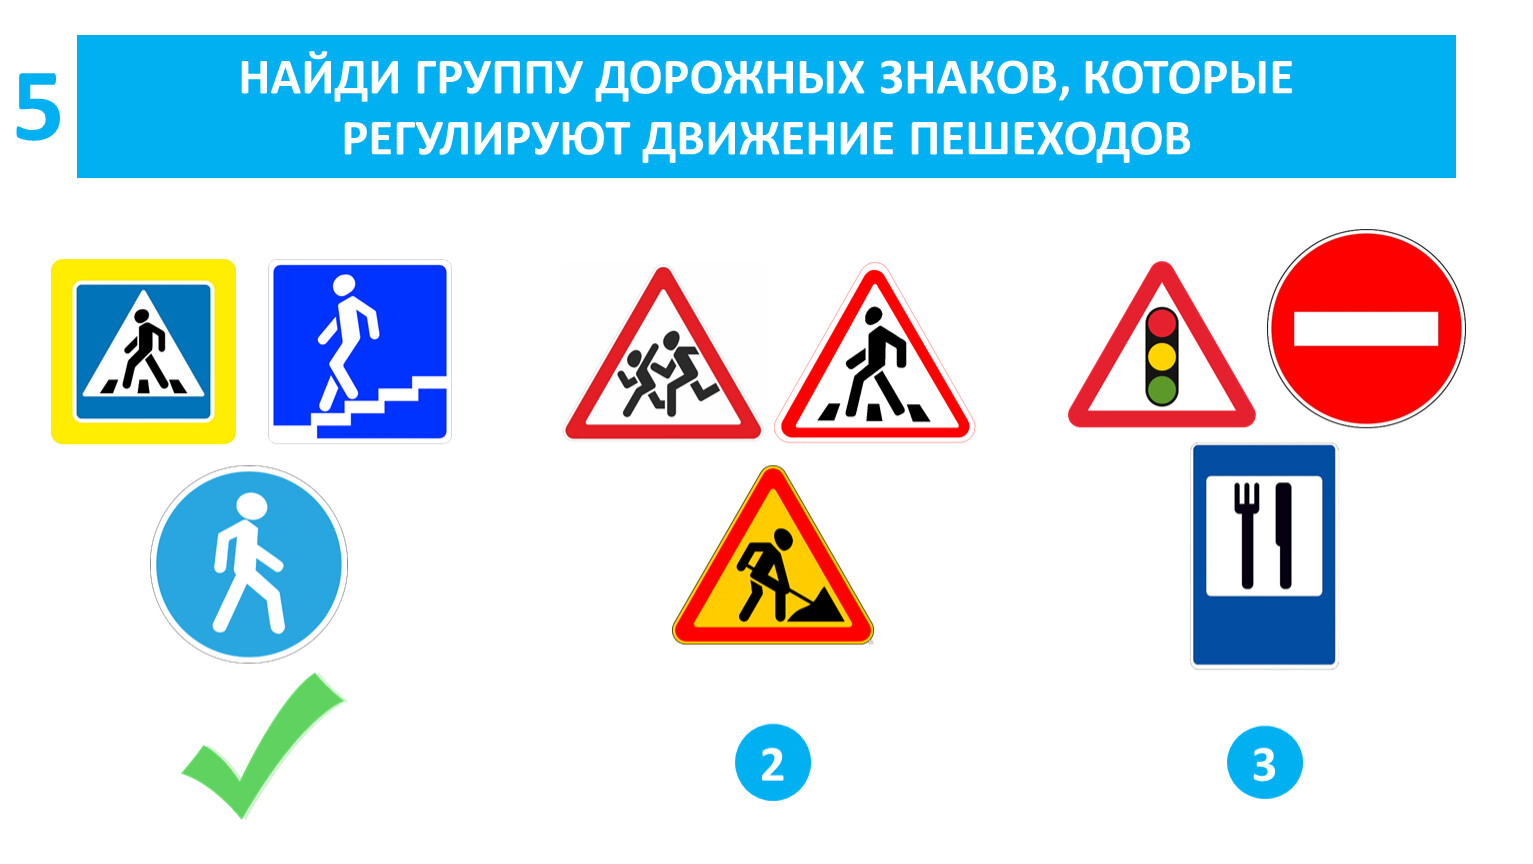 Три дорожных знака